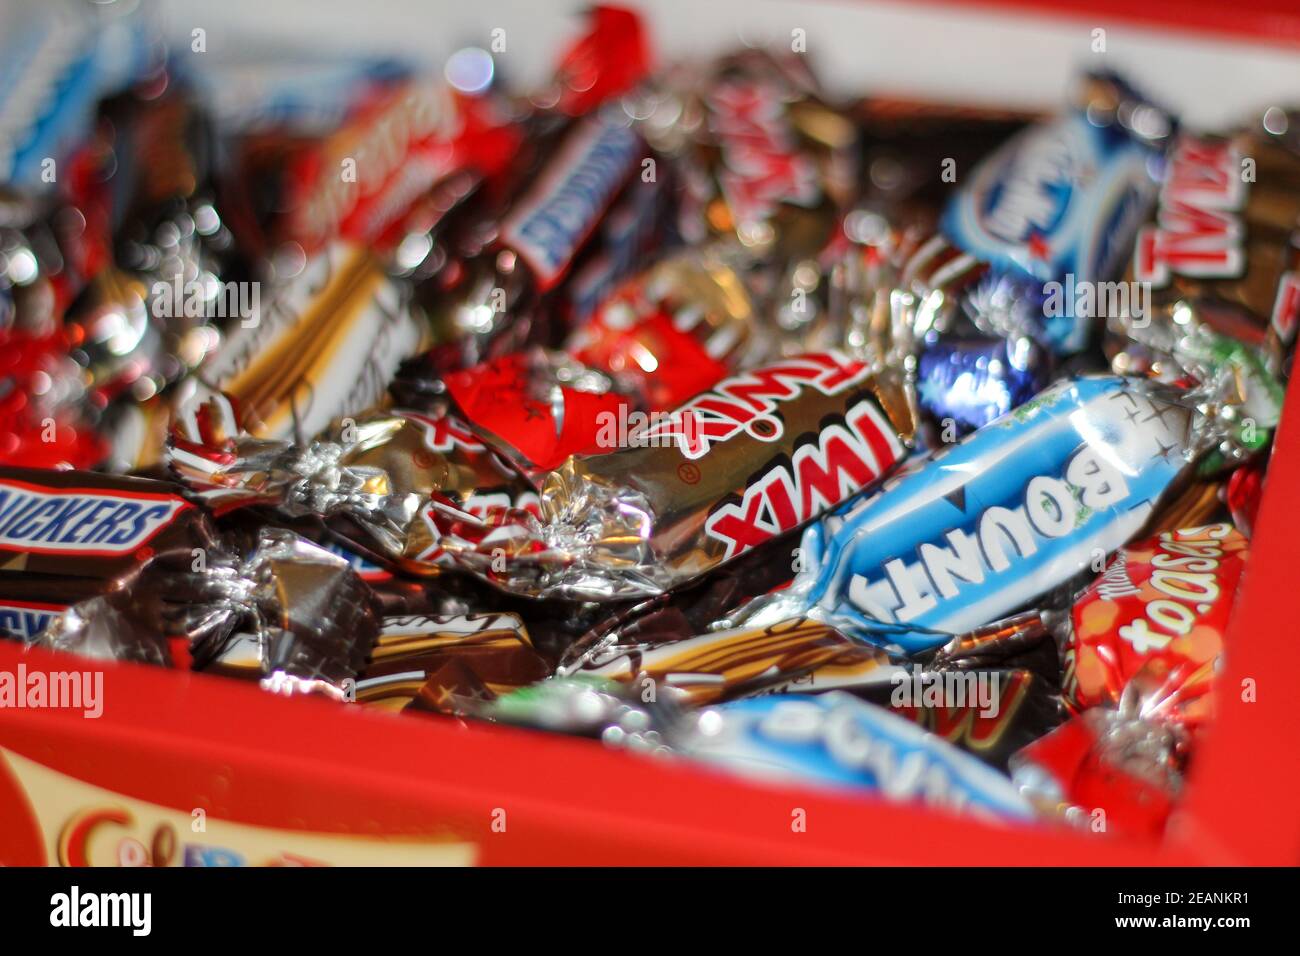 Un mélange de chocolats Celebrations vendus au Royaume-Uni dans une boîte cadeau Celebrations. MaLTESERS teasers, Bounty, Snickers, galaxie, twigx, mars bar et laiteux chemin Banque D'Images